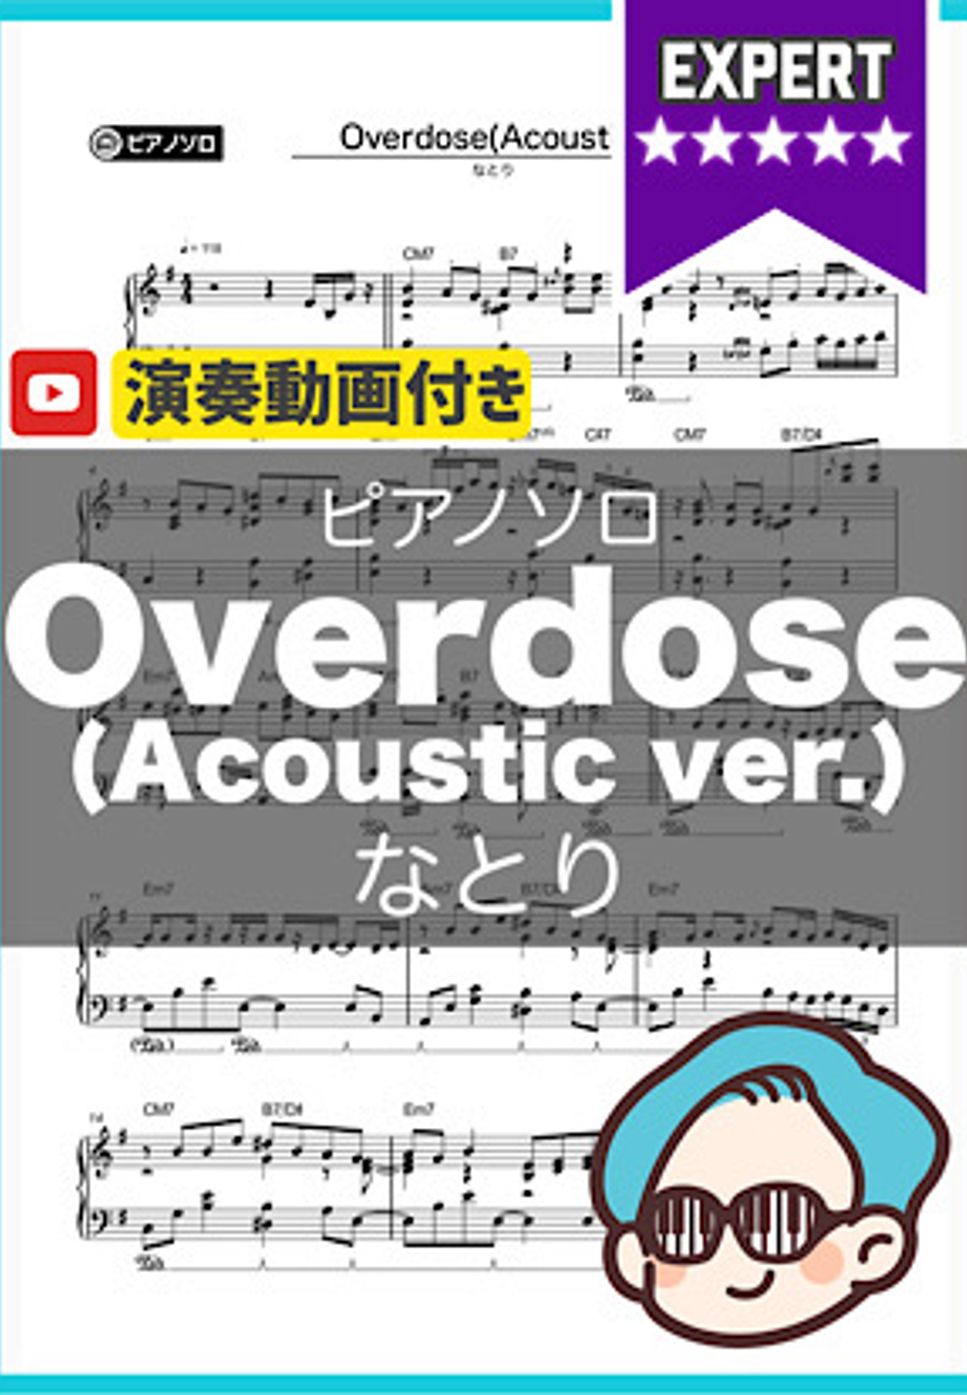 なとり - Overdose(Acoustic ver.) by シータピアノ